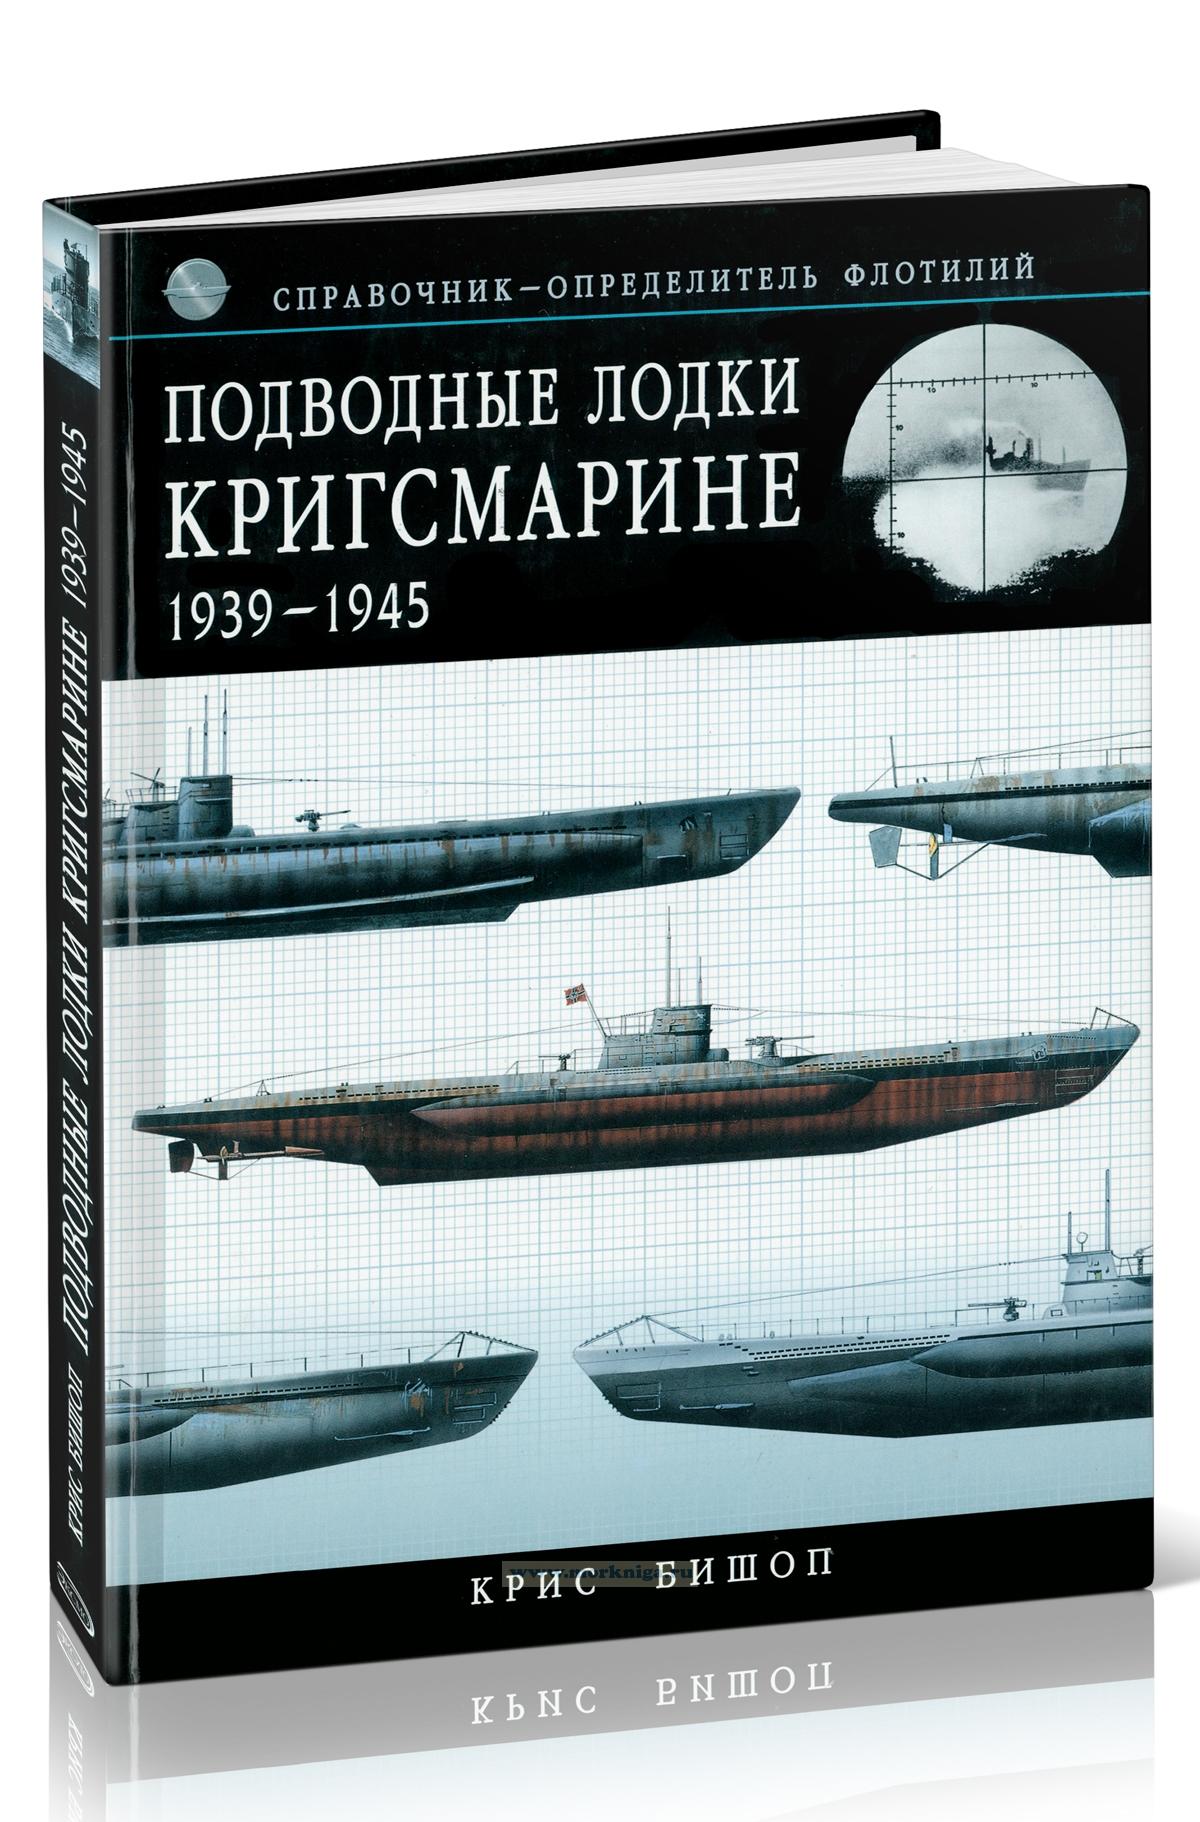 Подводные лодки Кригсмарине. 1939-1945. Справочник-определитель флотилий